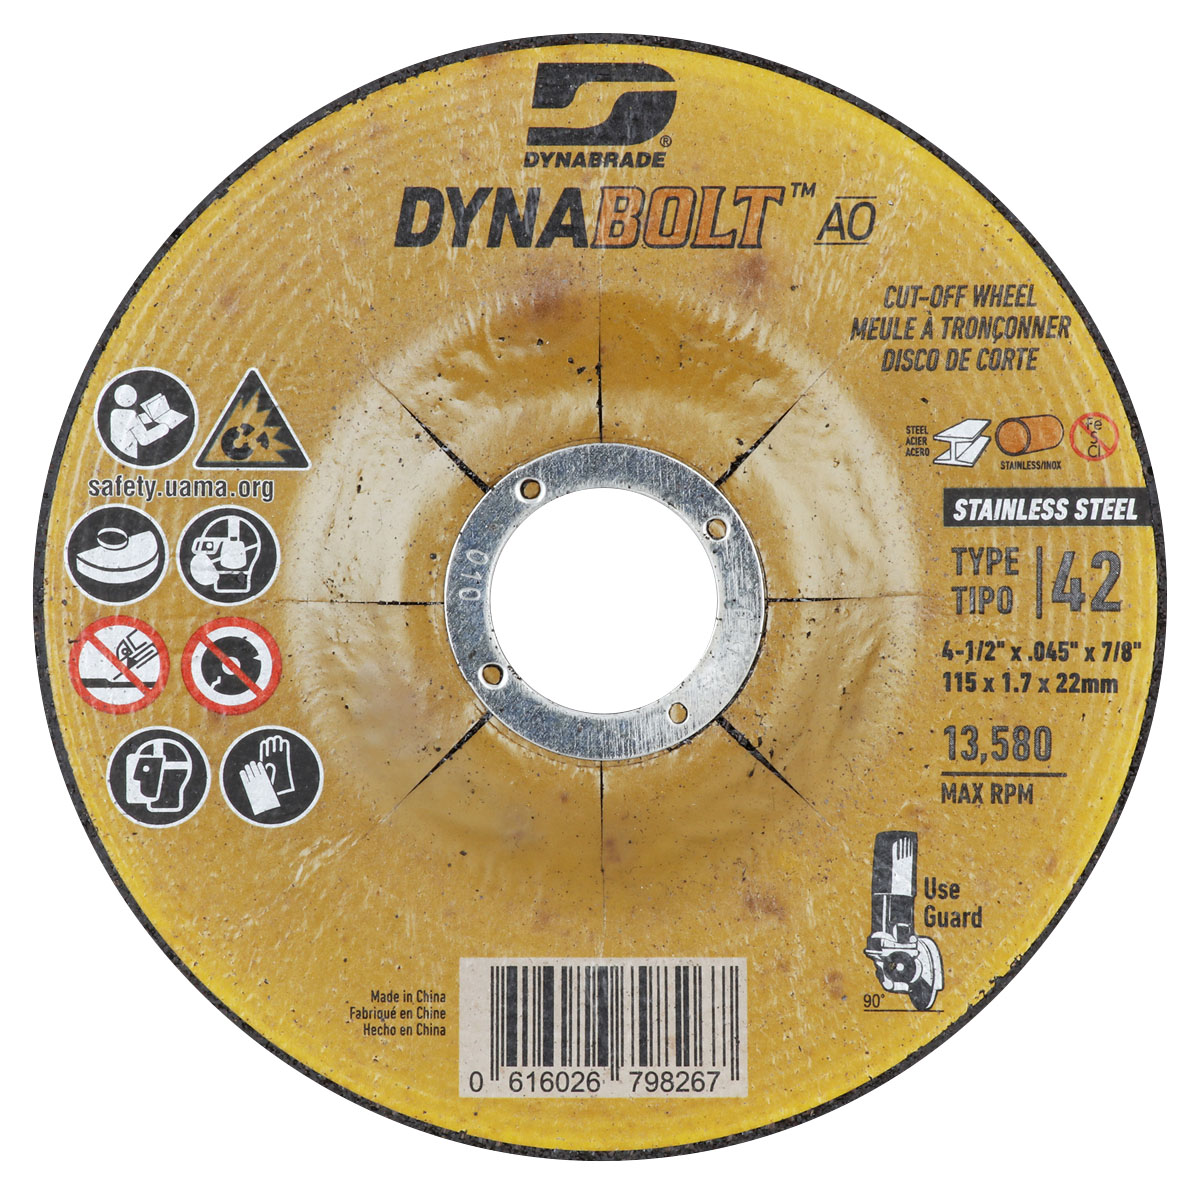 DynaBolt AO SS 4.5" x .045" x 7/8" T42 Right Angle